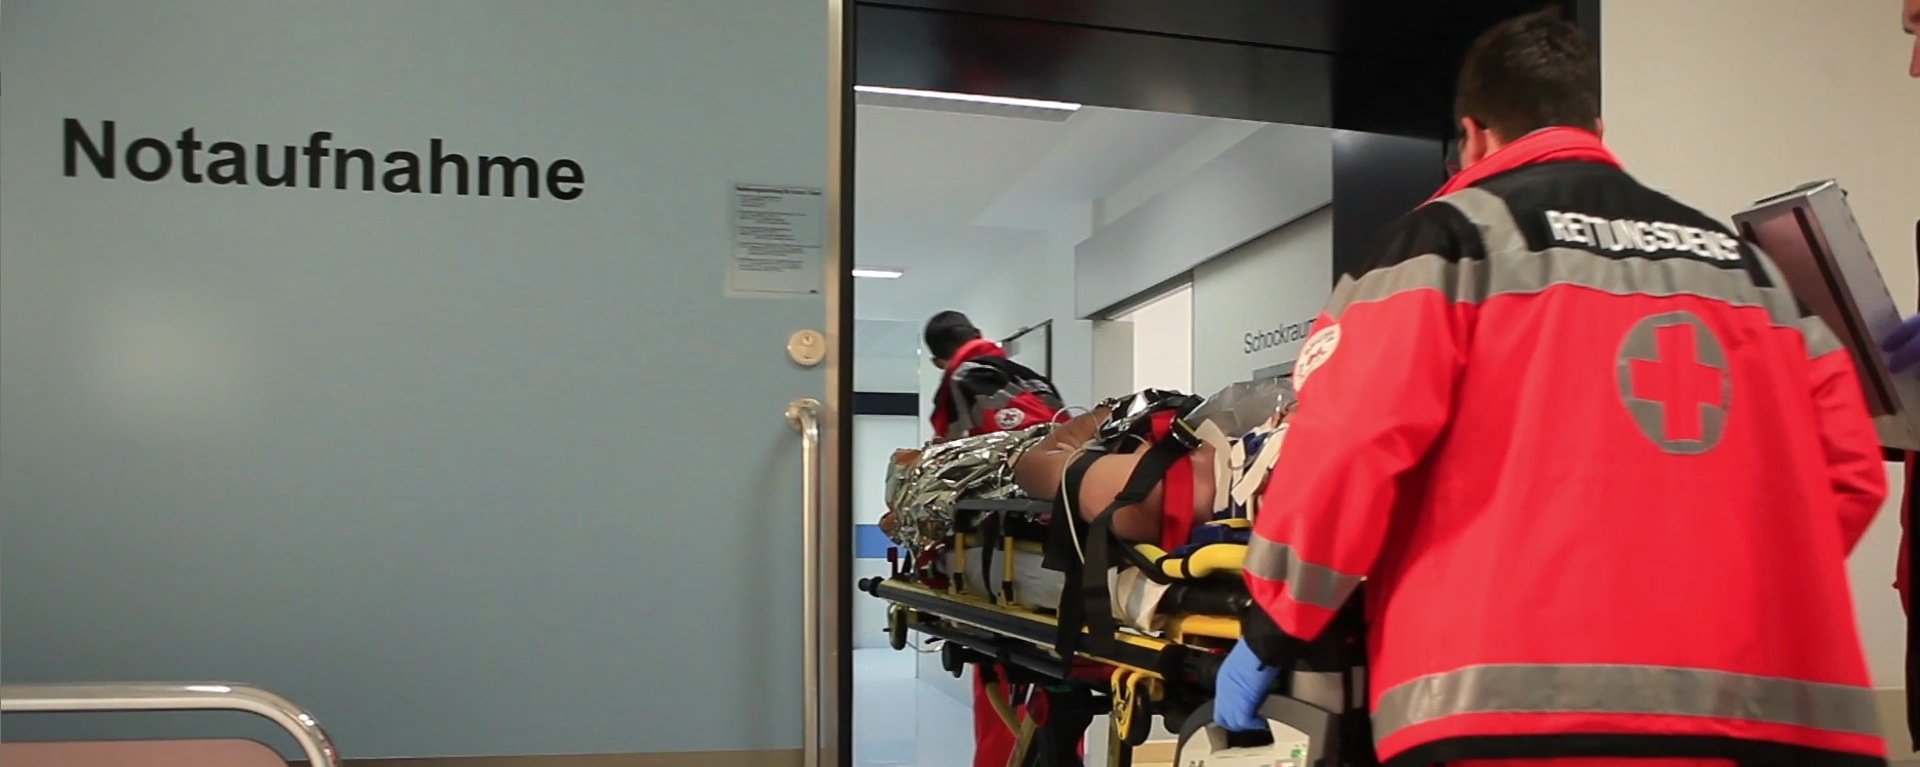 Rettungsdienst bringt einen Patienten auf einer Liege in die Notaufnahme